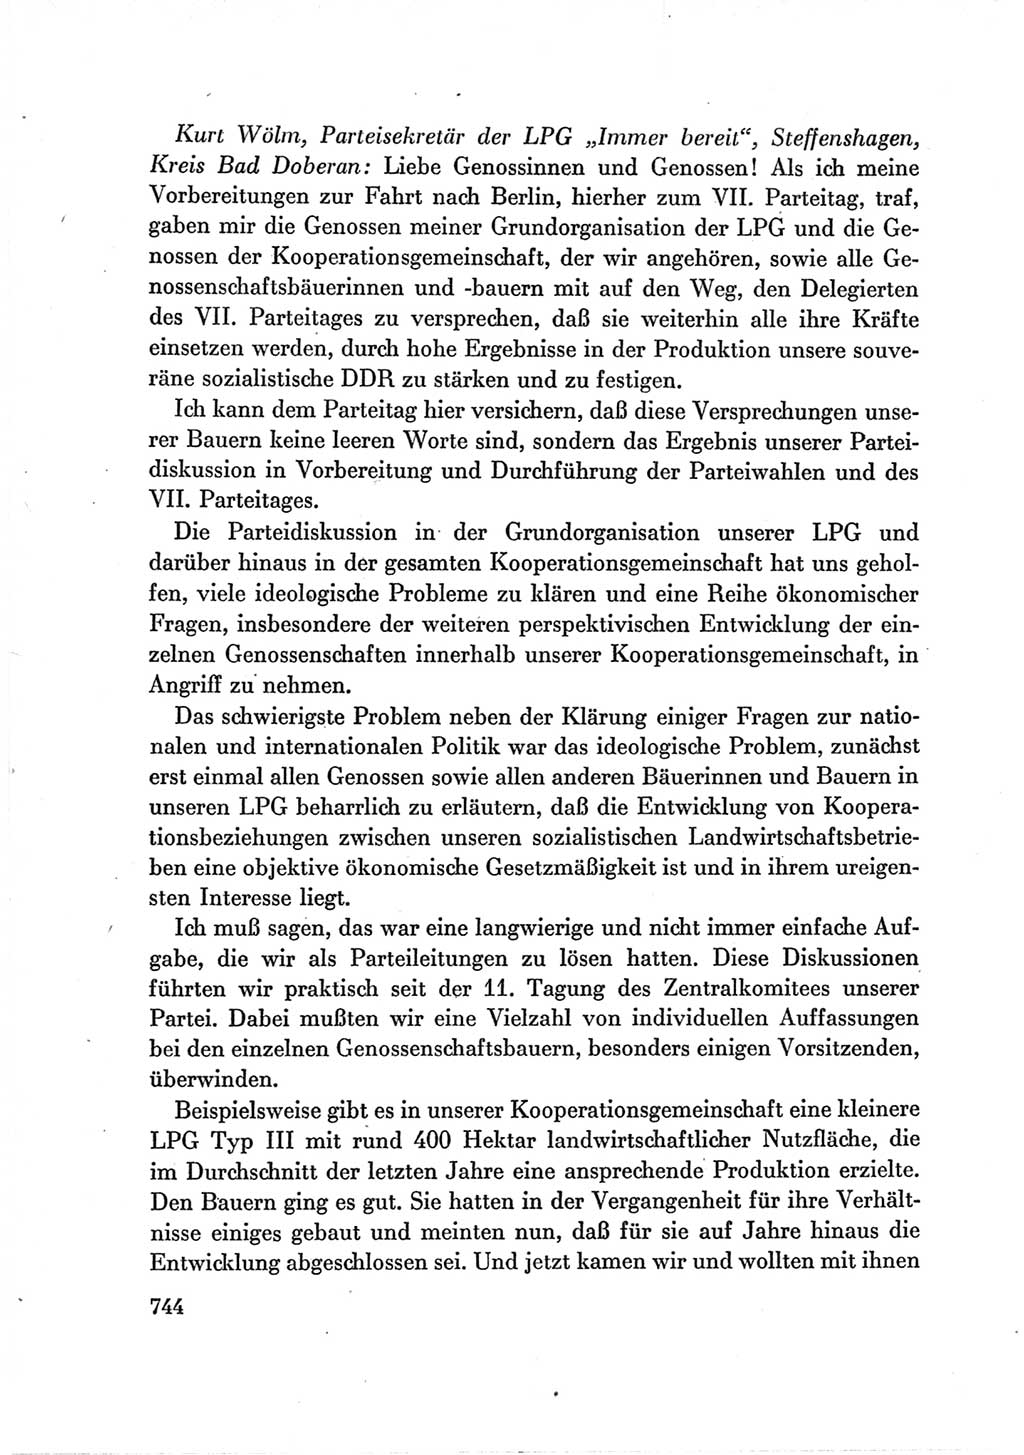 Protokoll der Verhandlungen des Ⅶ. Parteitages der Sozialistischen Einheitspartei Deutschlands (SED) [Deutsche Demokratische Republik (DDR)] 1967, Band Ⅲ, Seite 744 (Prot. Verh. Ⅶ. PT SED DDR 1967, Bd. Ⅲ, S. 744)